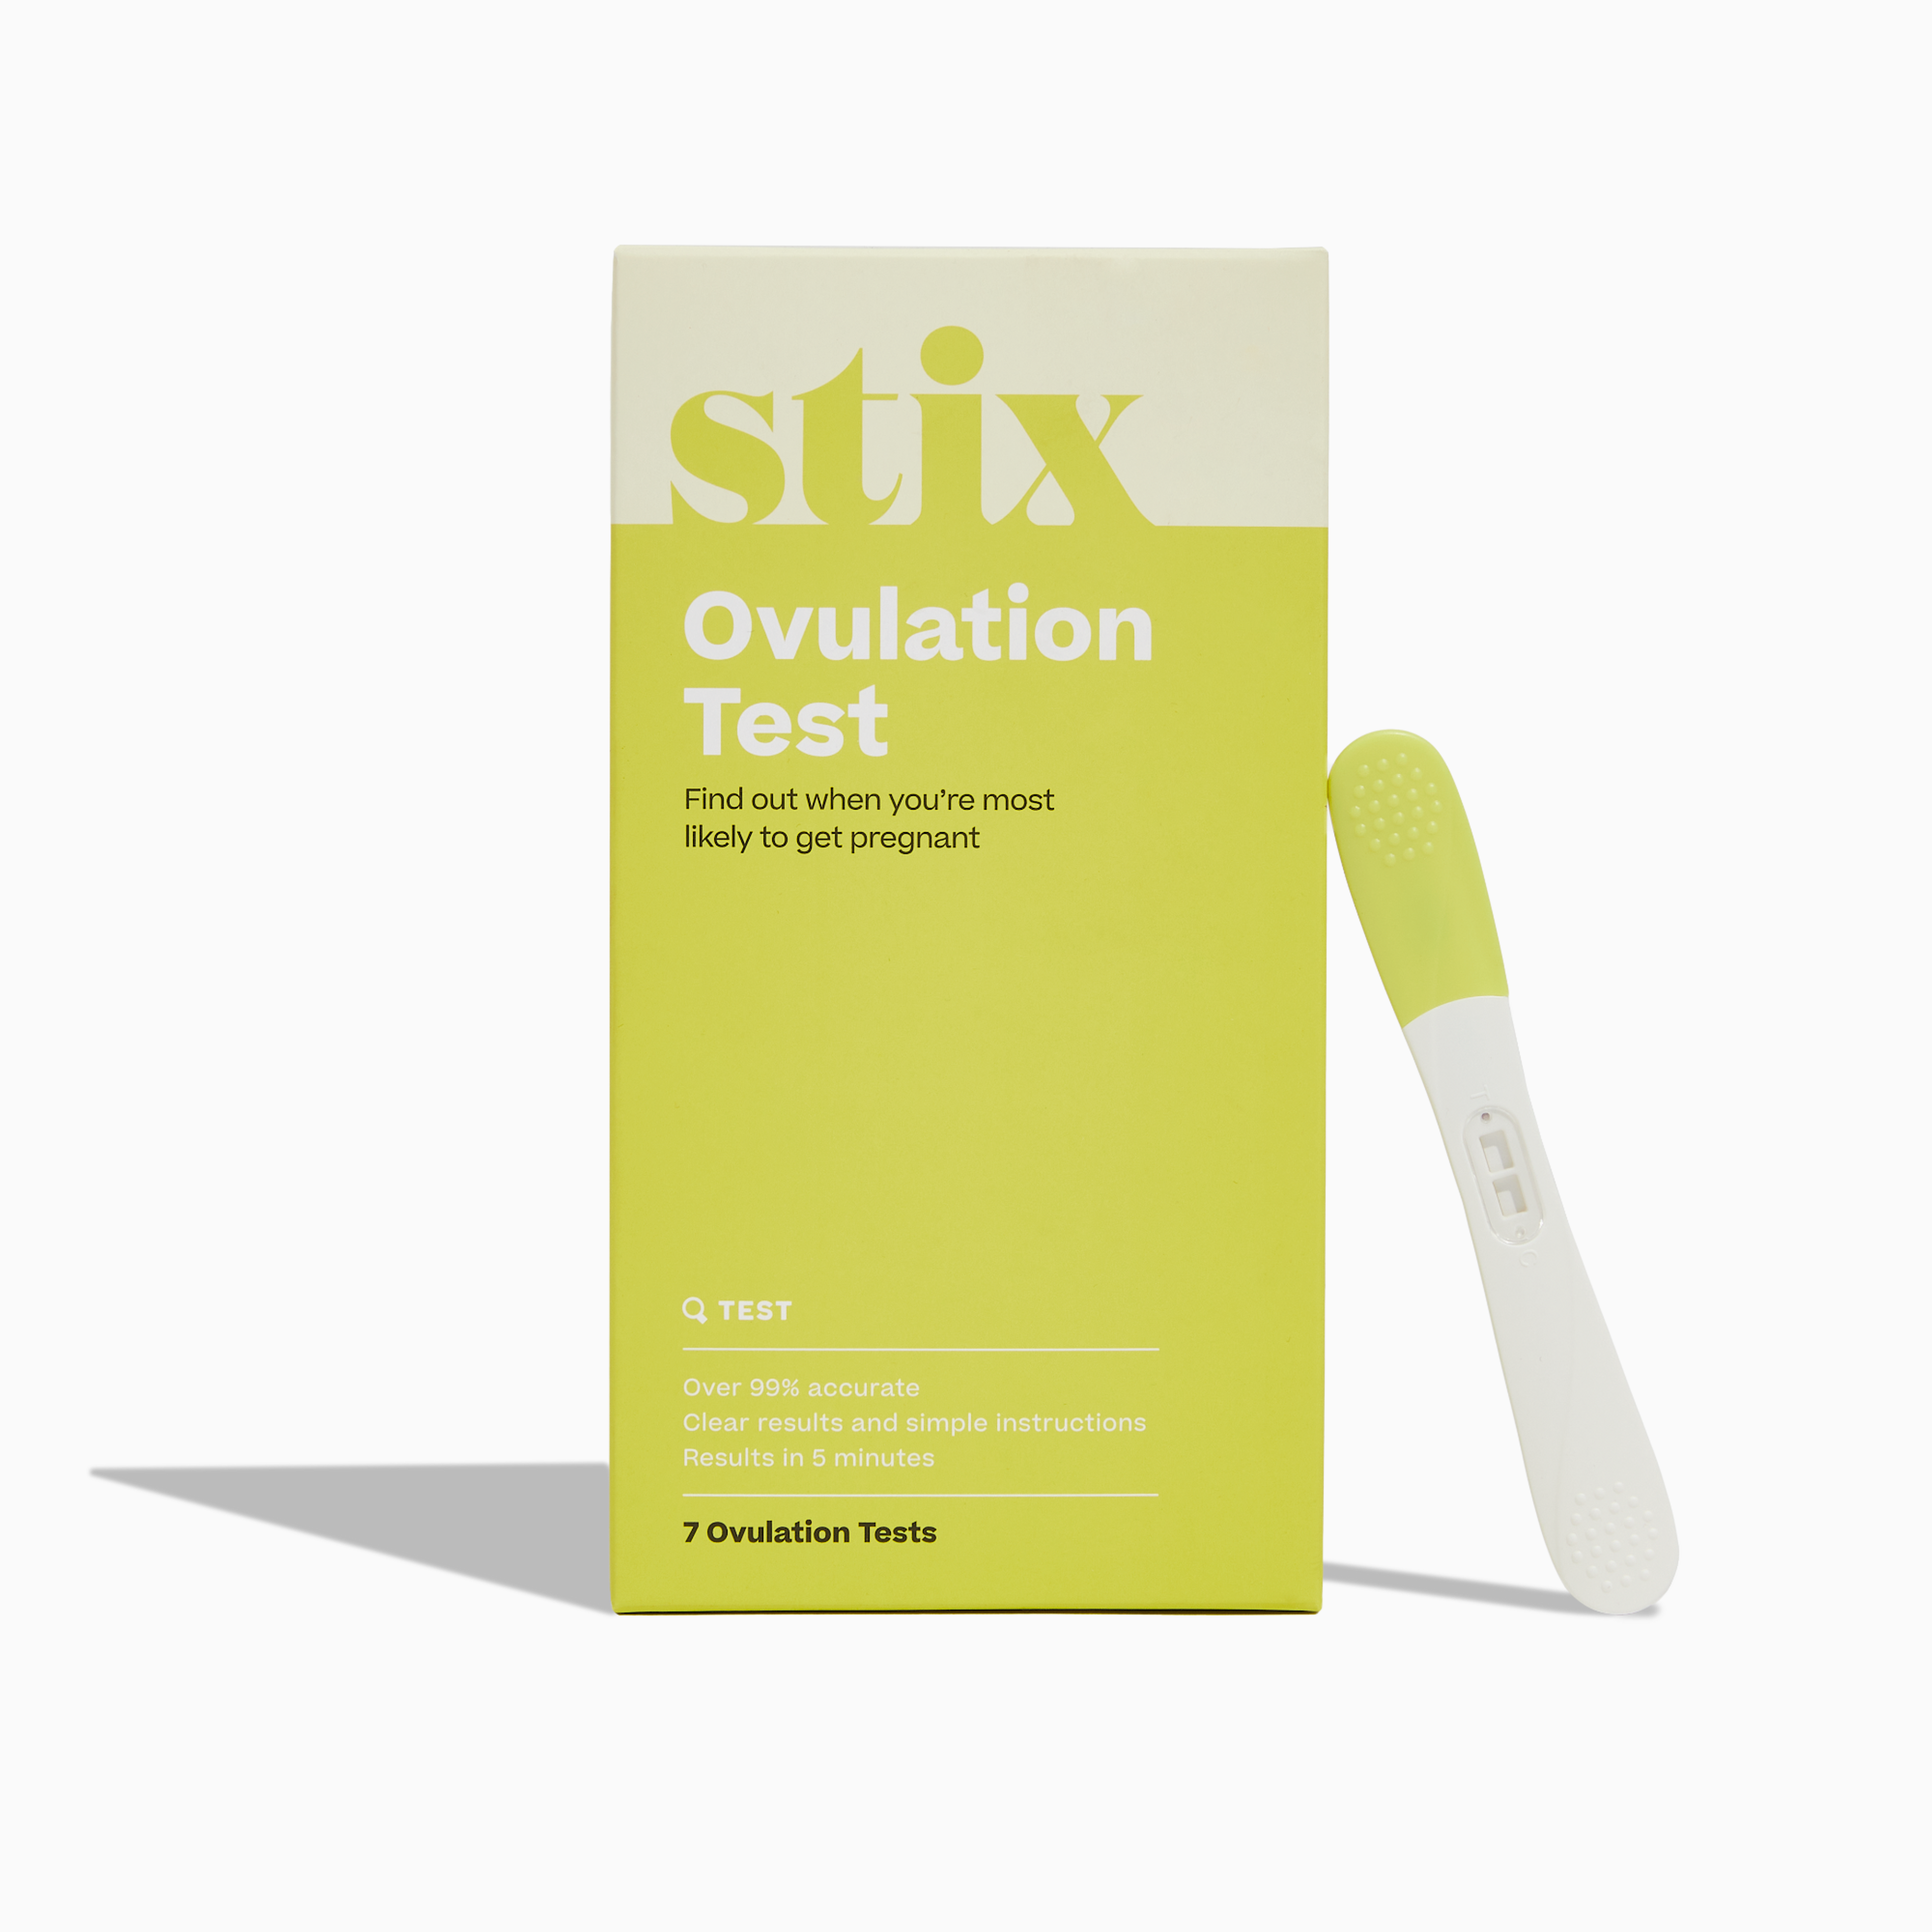 Ovulation Tests